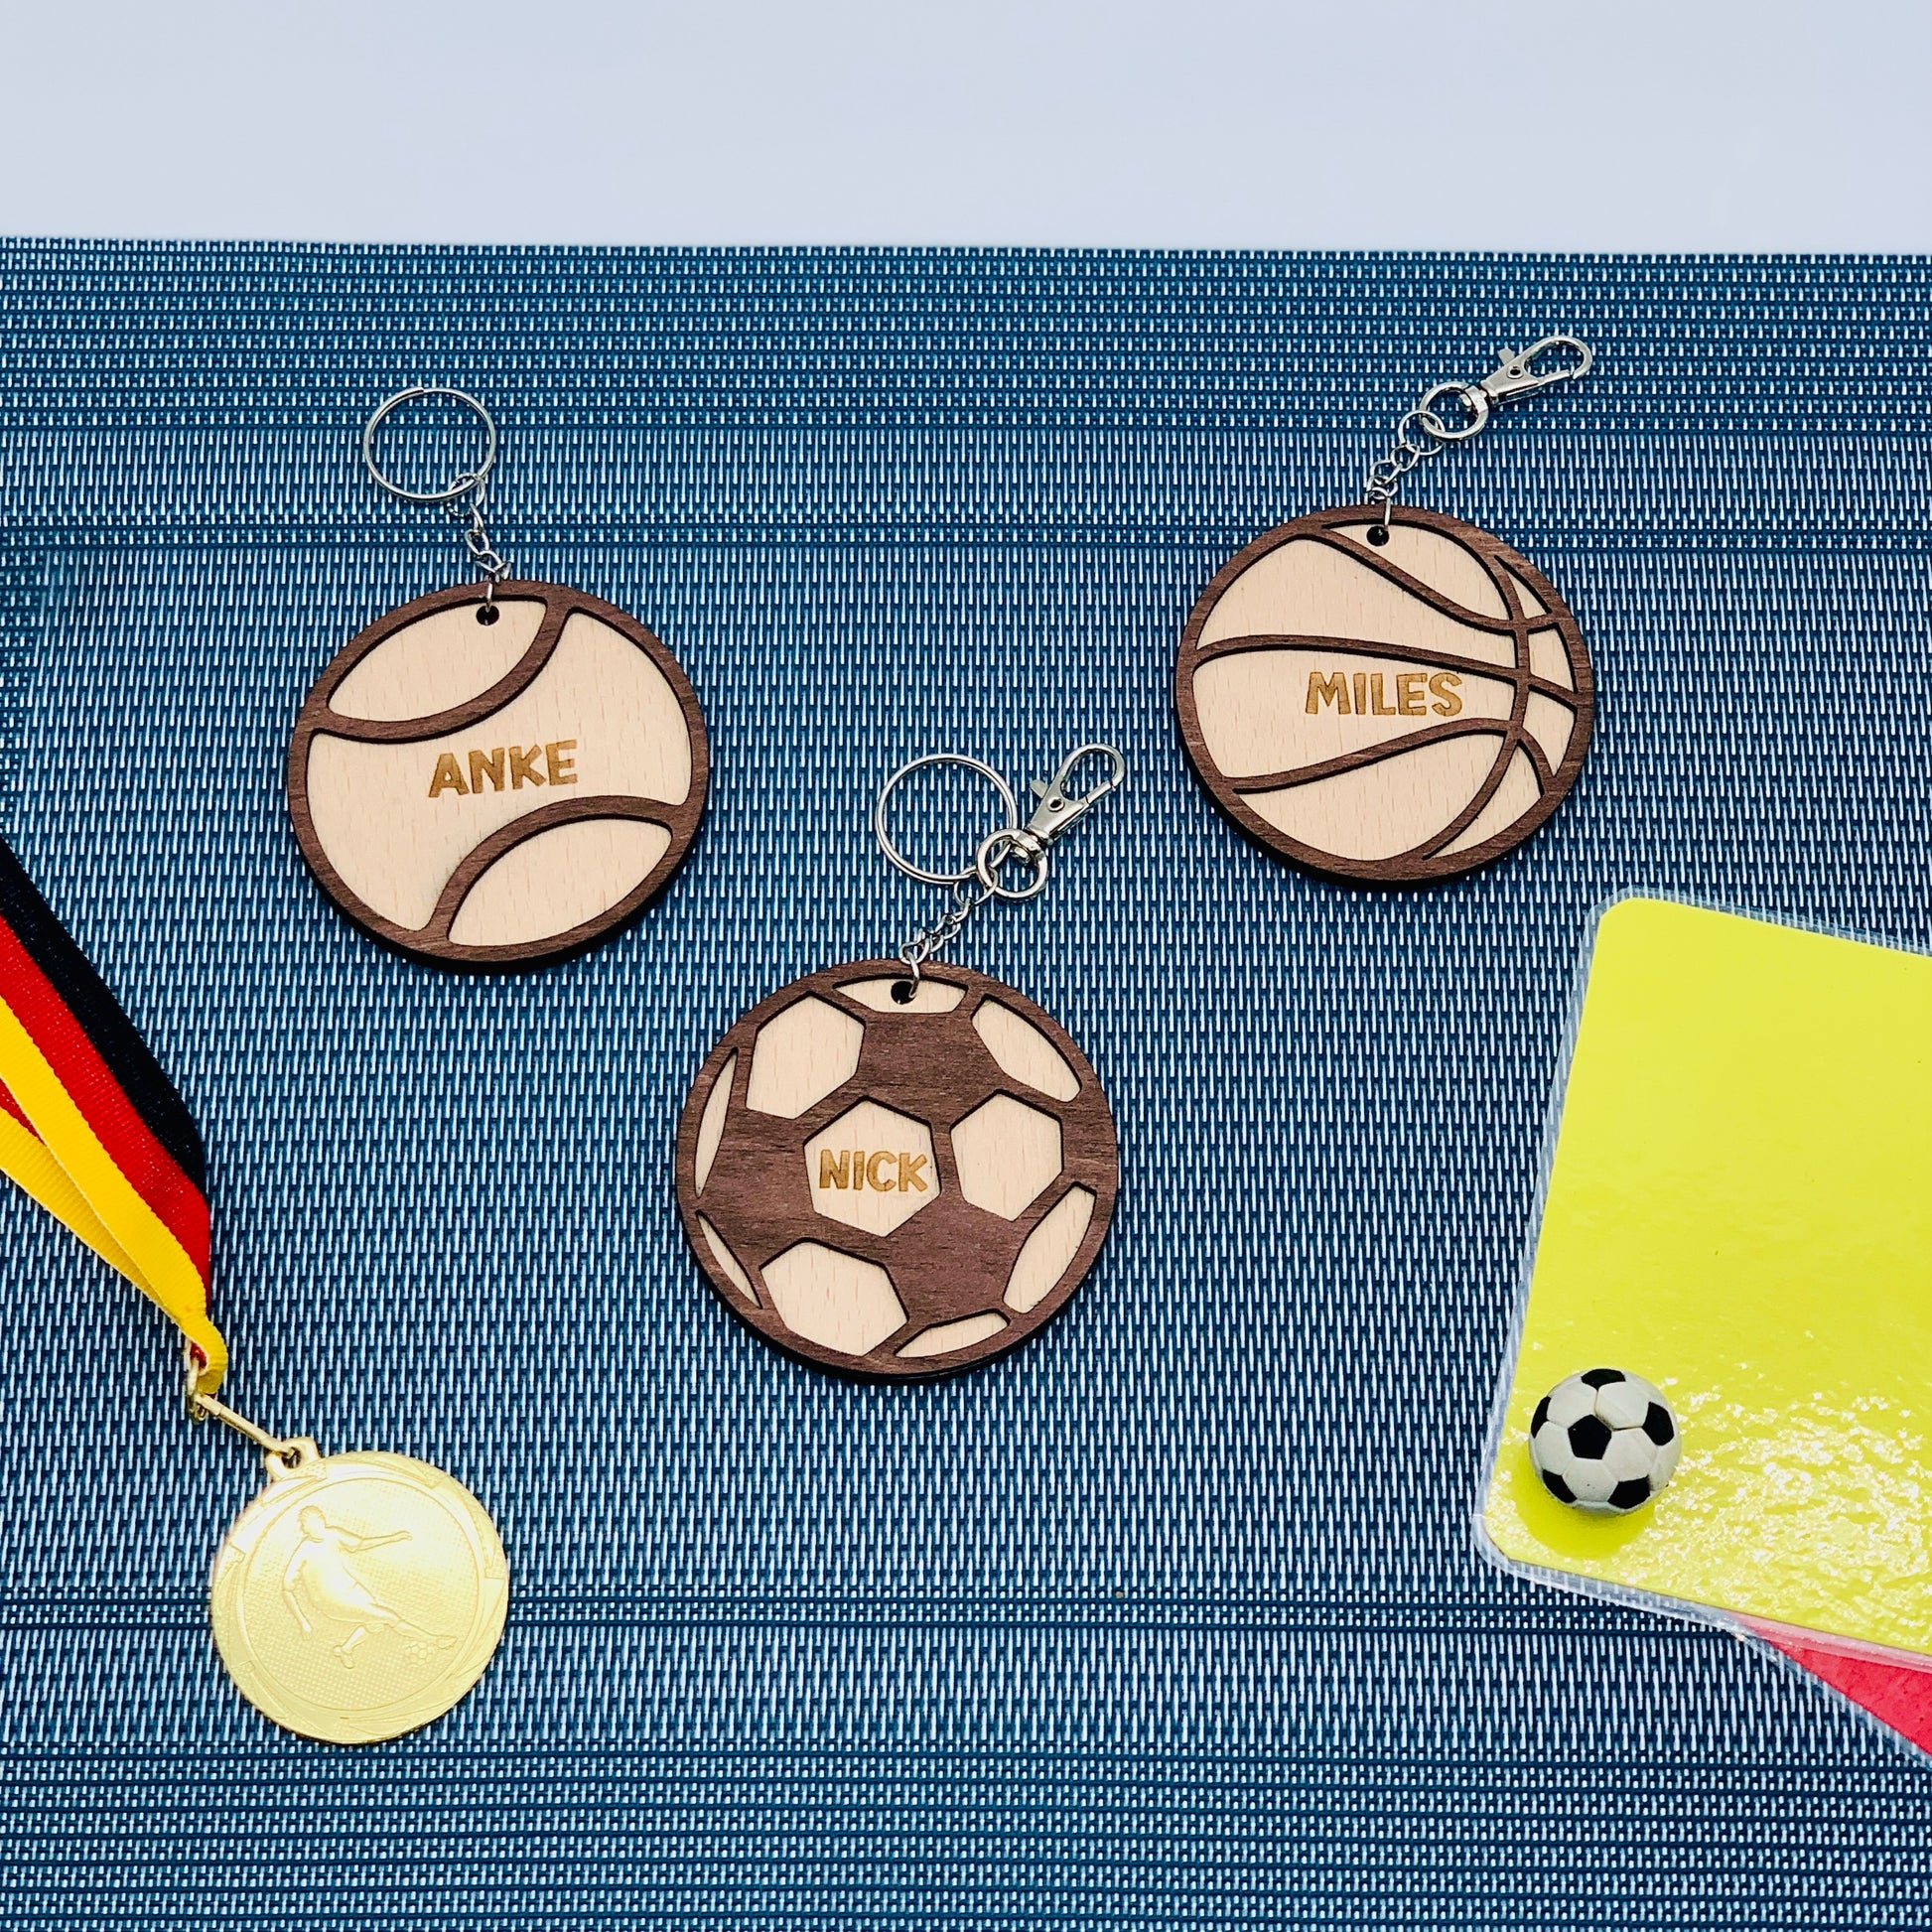 Kaufe Basketball Tennis Mini PVC Fußball Schlüsselanhänger Volleyball Autoschlüssel  Anhänger Schmuck Geschenk